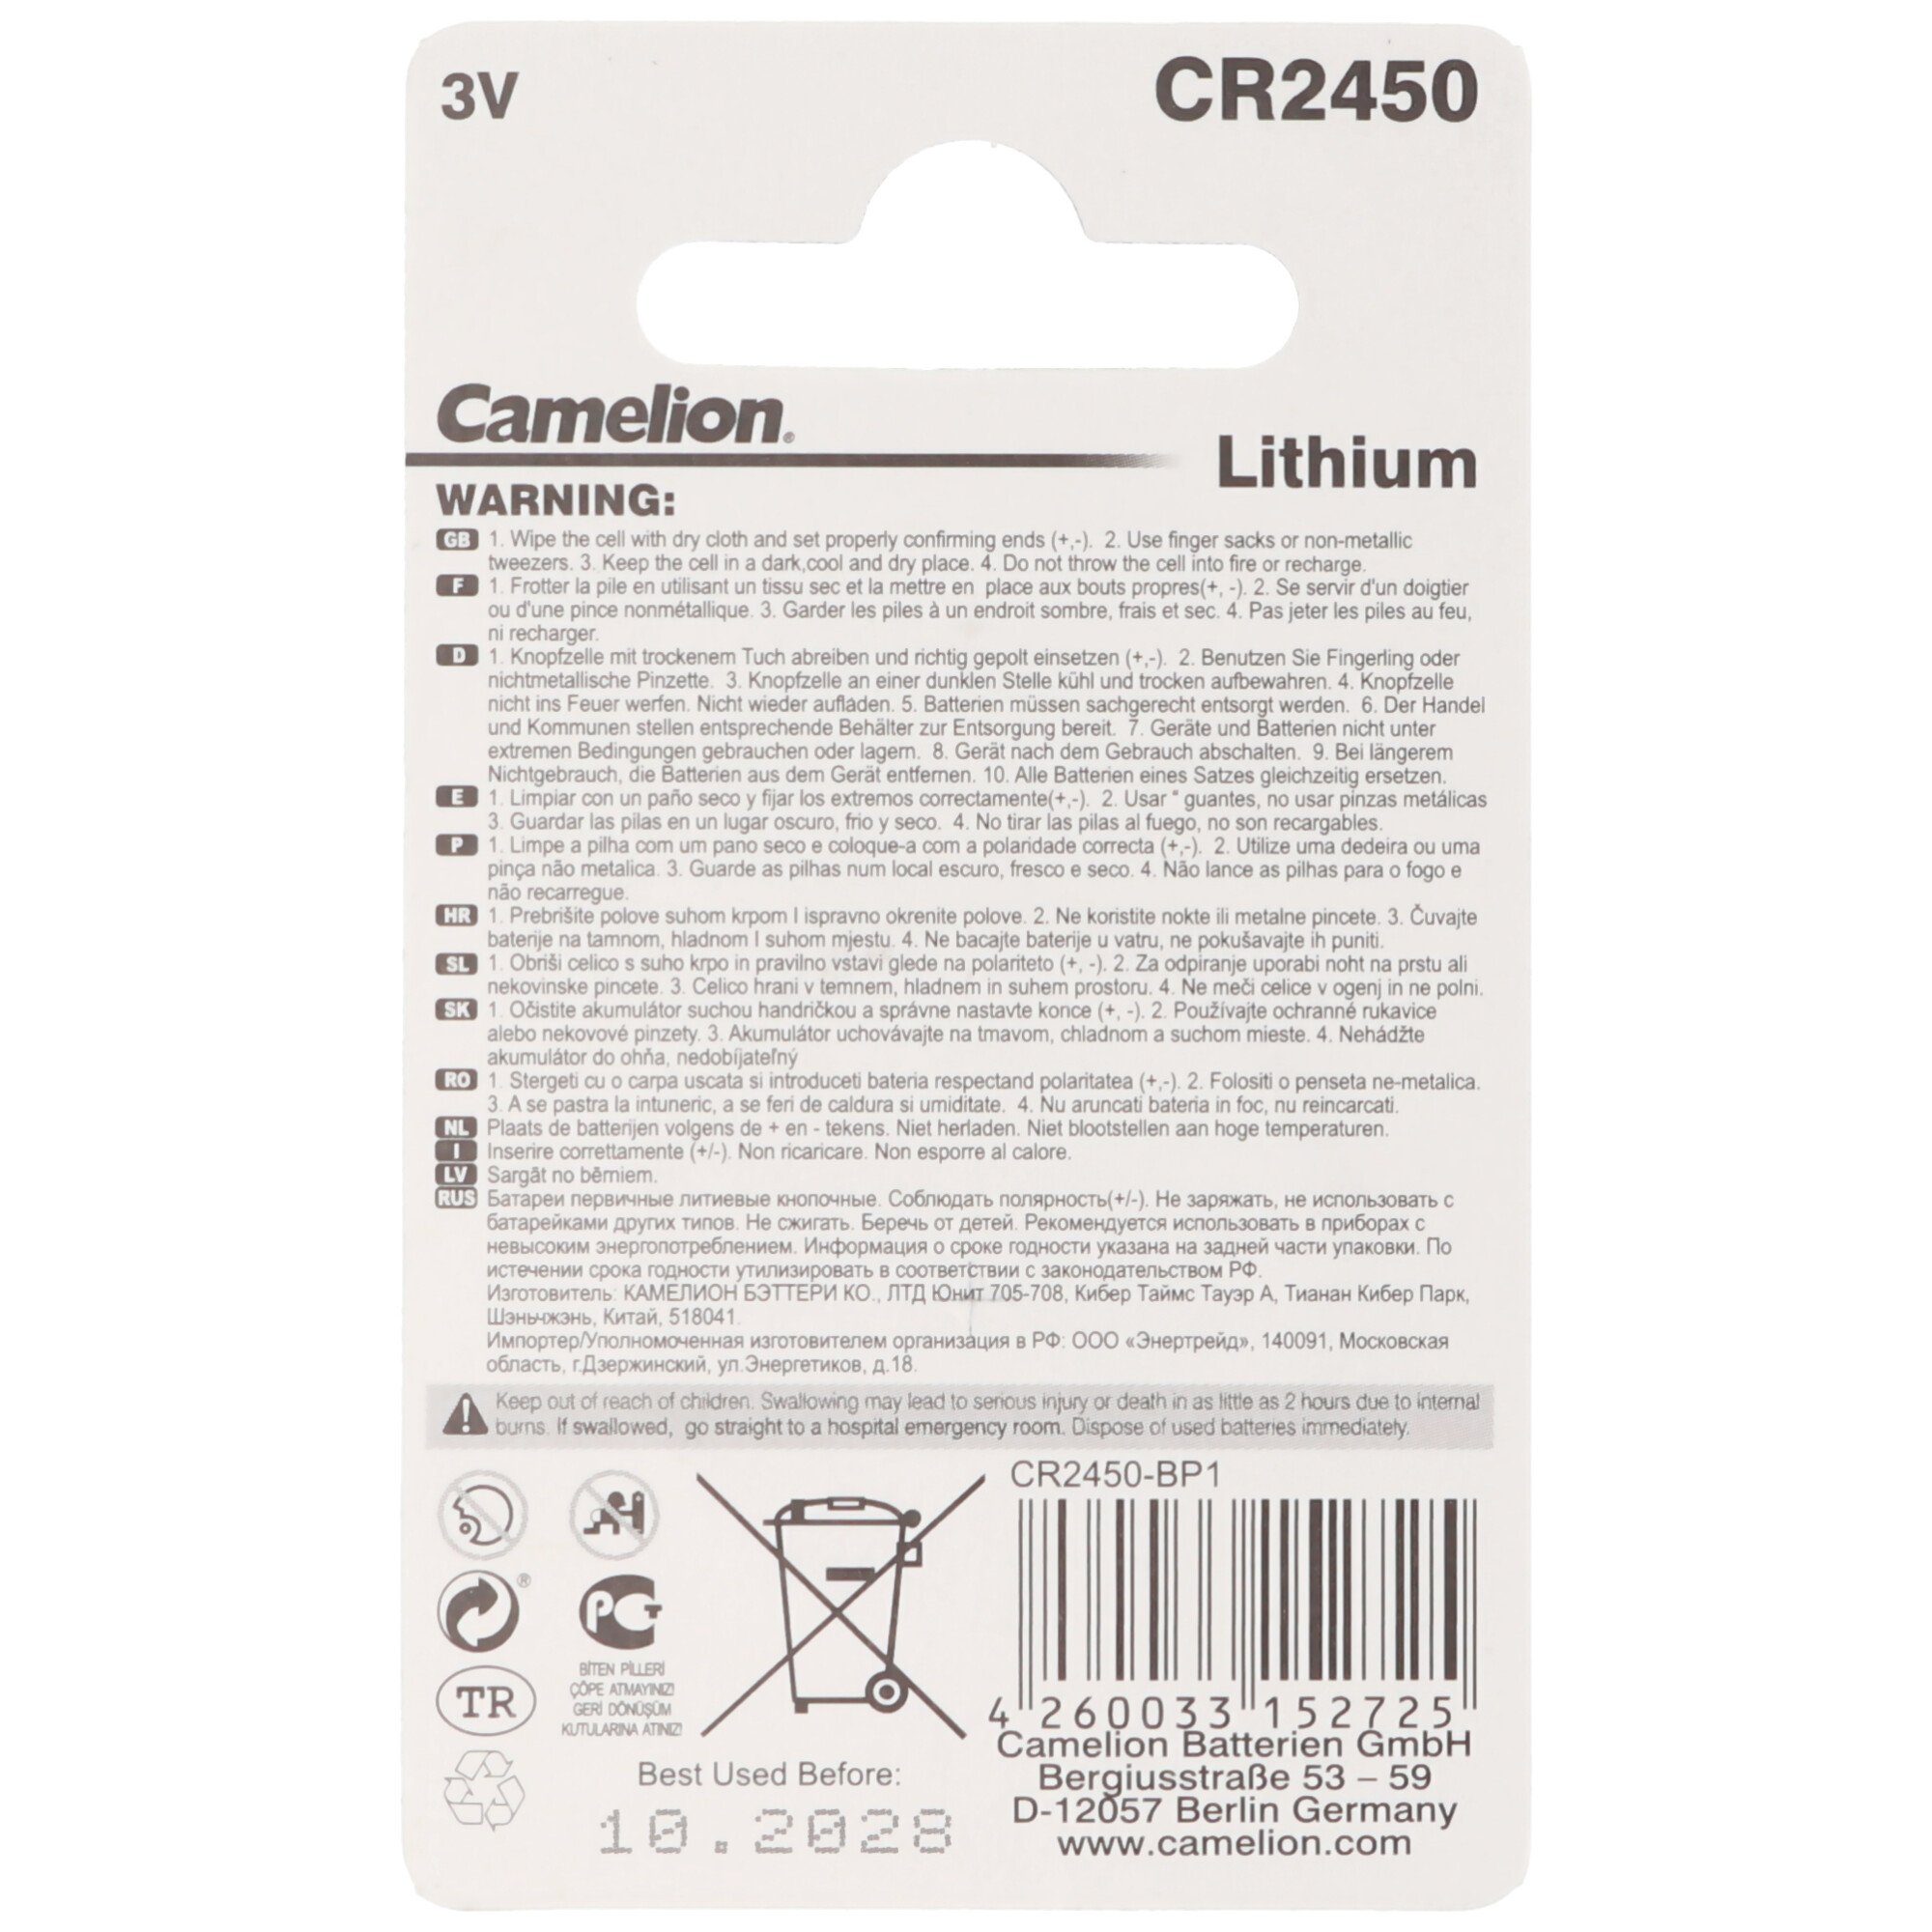 Camelion CR2450 Lithium (3,0 Batterie, V) Knopfzelle IEC Batterie CR2450 Lithium Batterie